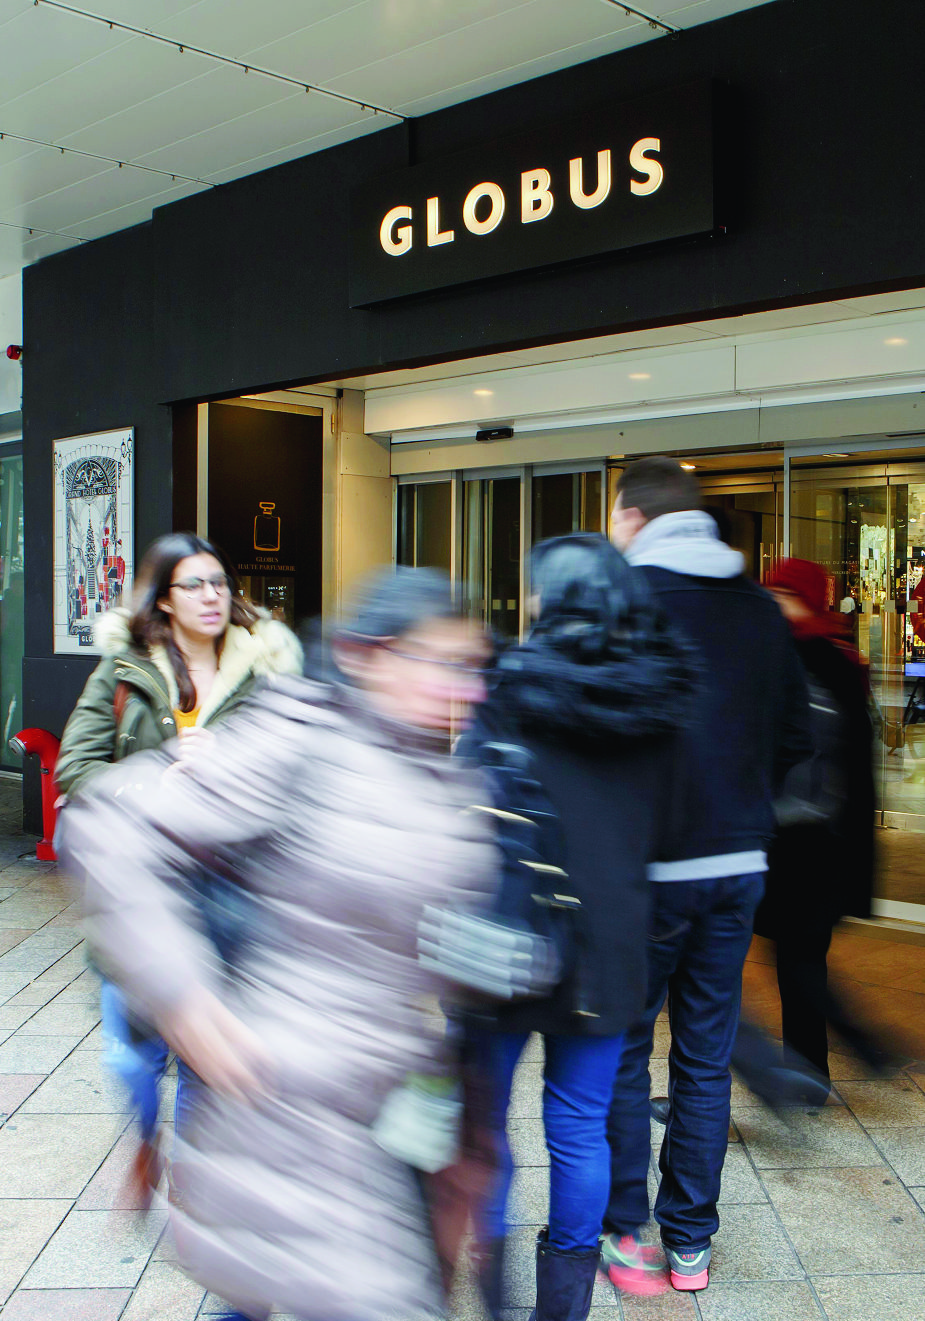 Des personnes entrent ou sortent par l'entree principale de Globus Geneve, ce mercredi 20 decembre 2017 a Geneve. Le grand magasin Globus Geneve mene actuellement une restructuration avec des licenciements depuis quelques mois. (KEYSTONE/Salvatore Di Nolfi) SCHWEIZ GLOBUS SCHILD